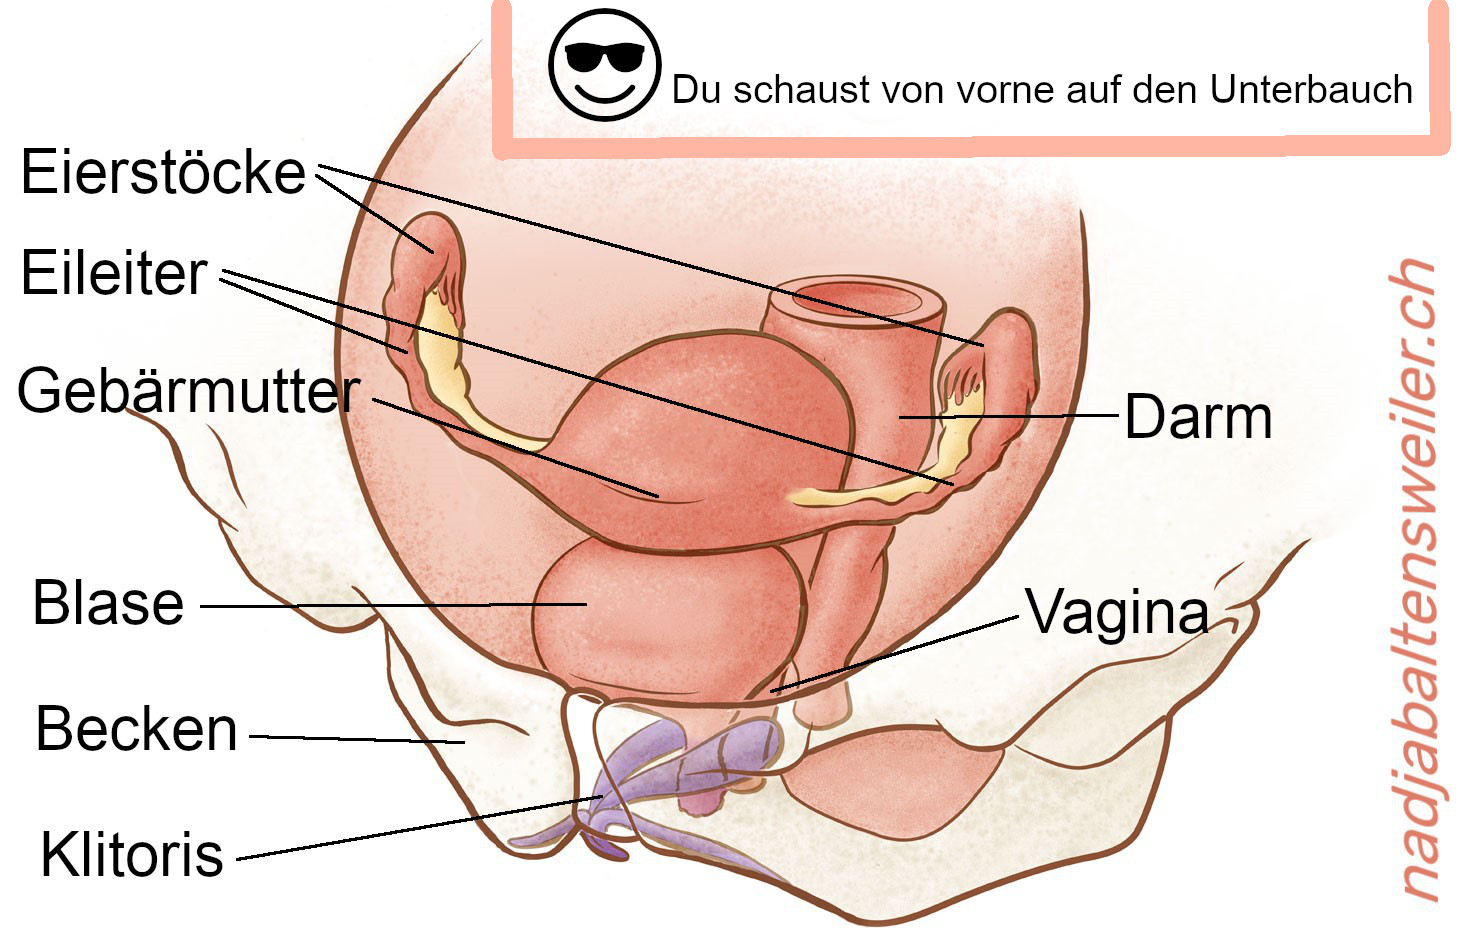 Geschlechtsorgane weiblich gelesener Personen. Beschriftet sind die Eierstöcke und Eileiter, die Gebärmutter, die Blase, das Becken, die Klitoris, die Vagina und der Darm.